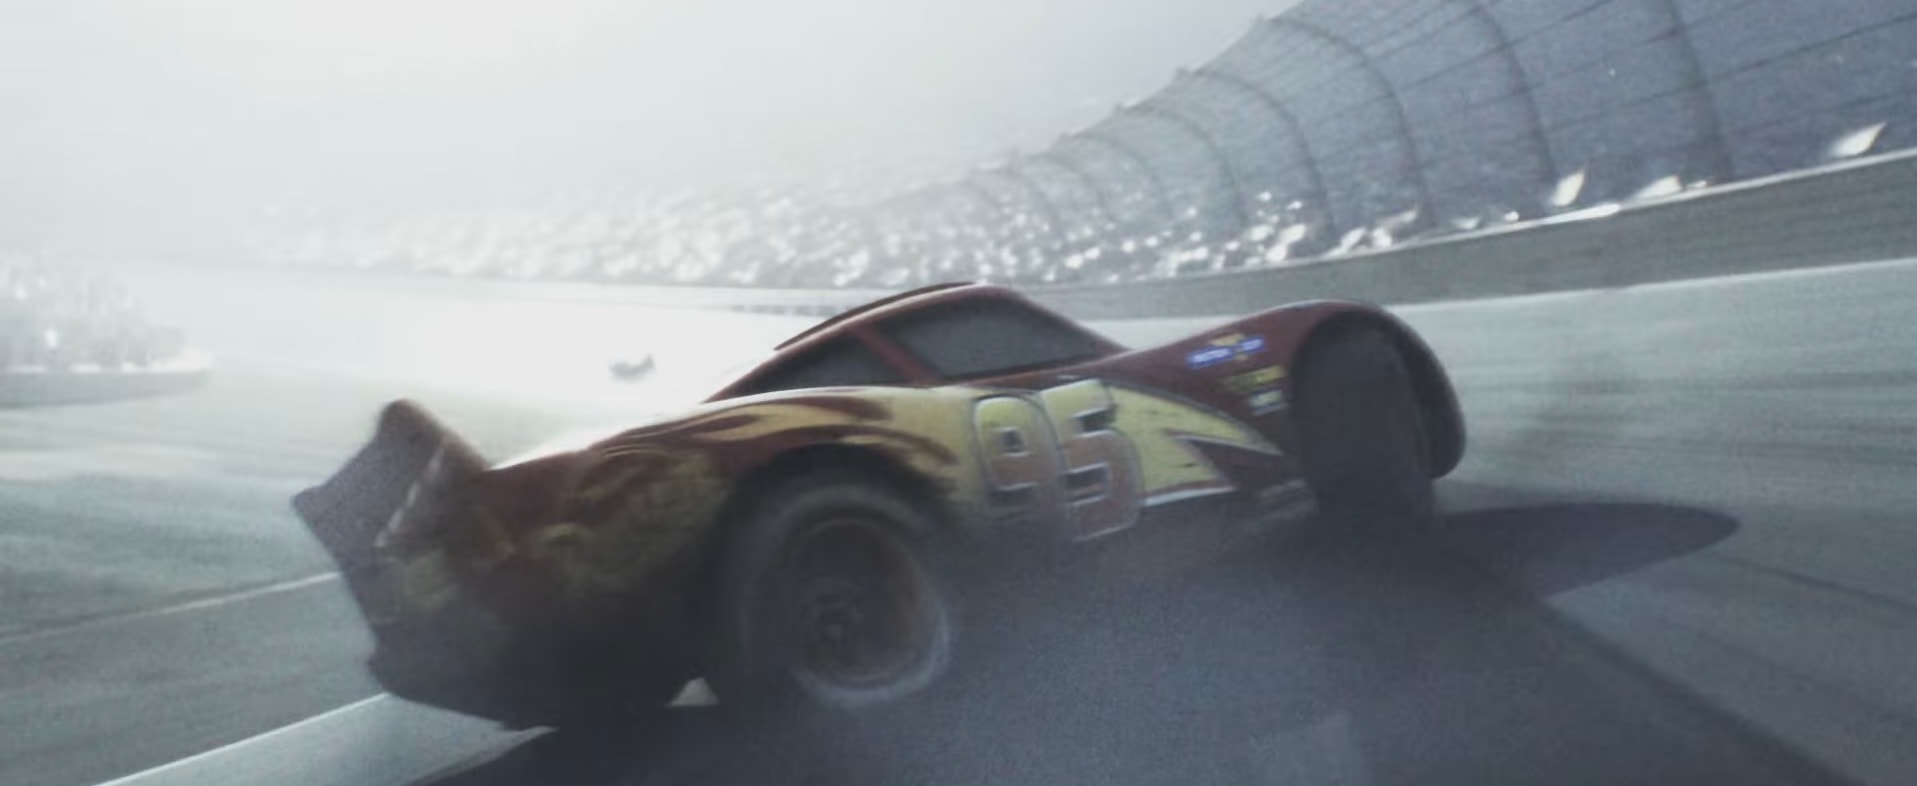 Pixar Releases 'Cars 3' Teaser Trailer